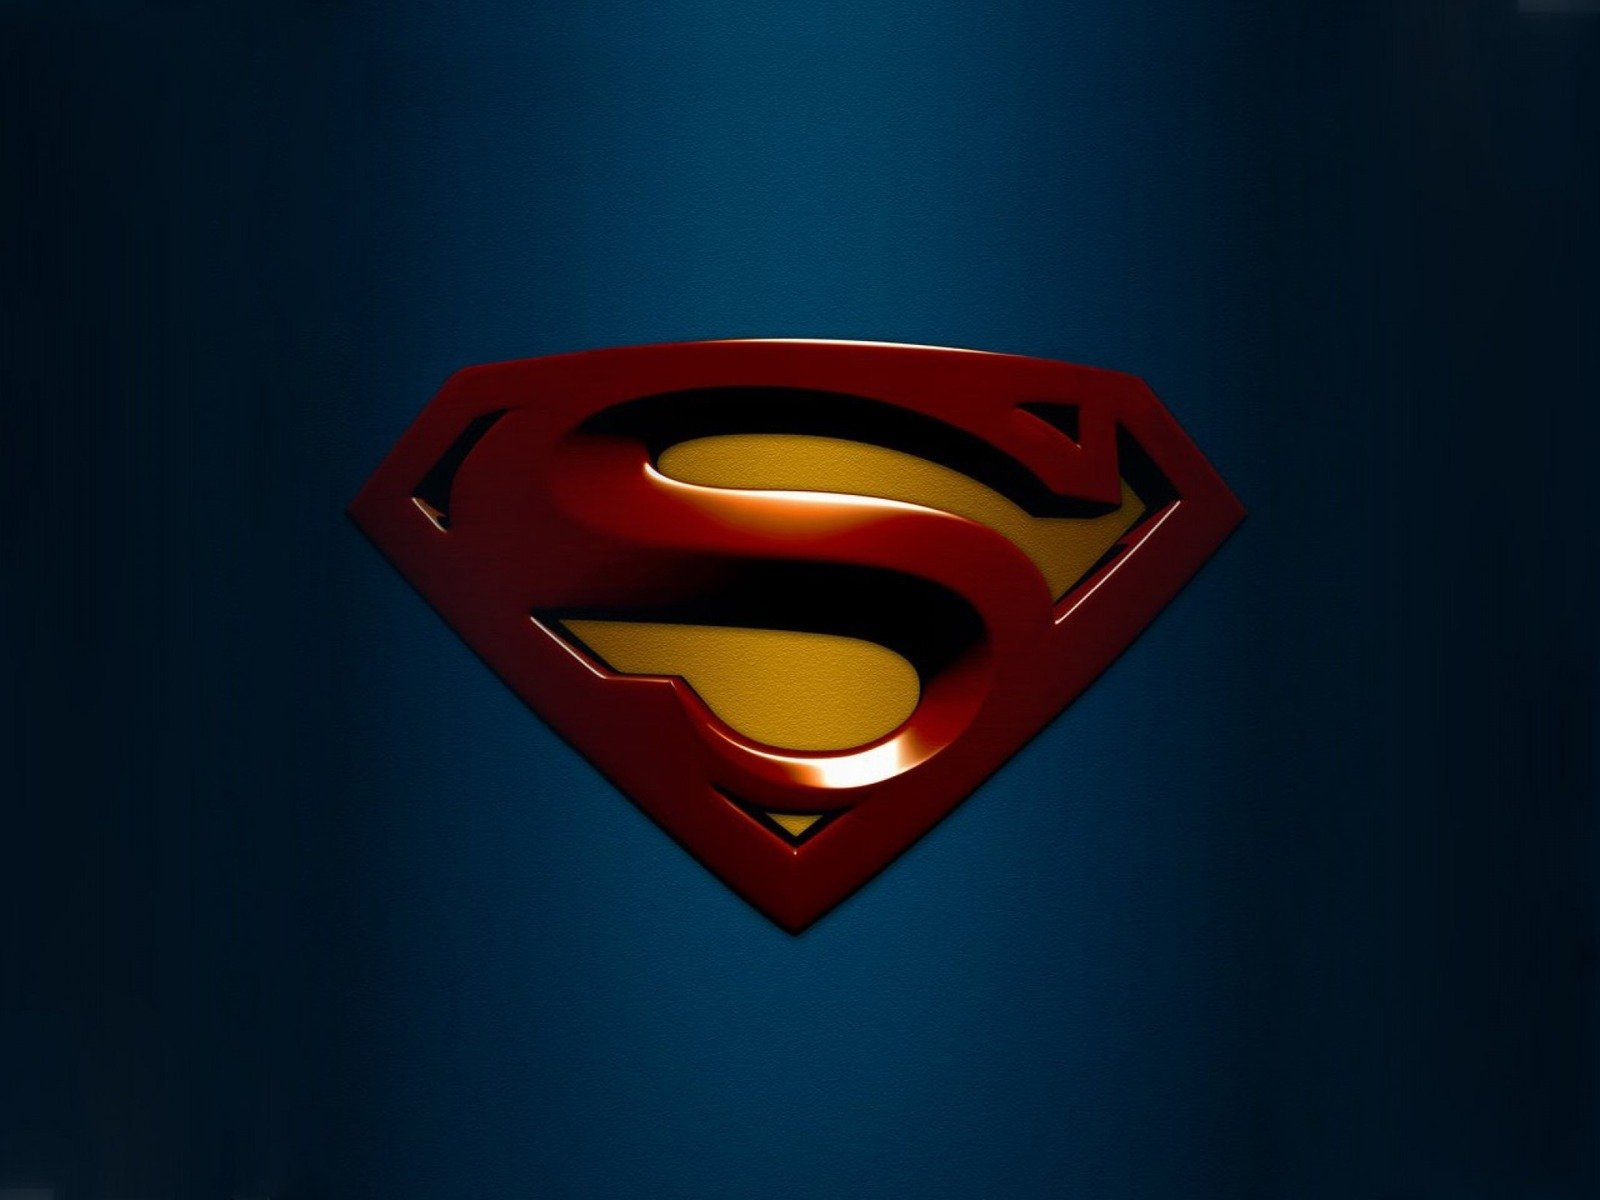 46+] Superman HD Wallpapers 1080p - WallpaperSafari